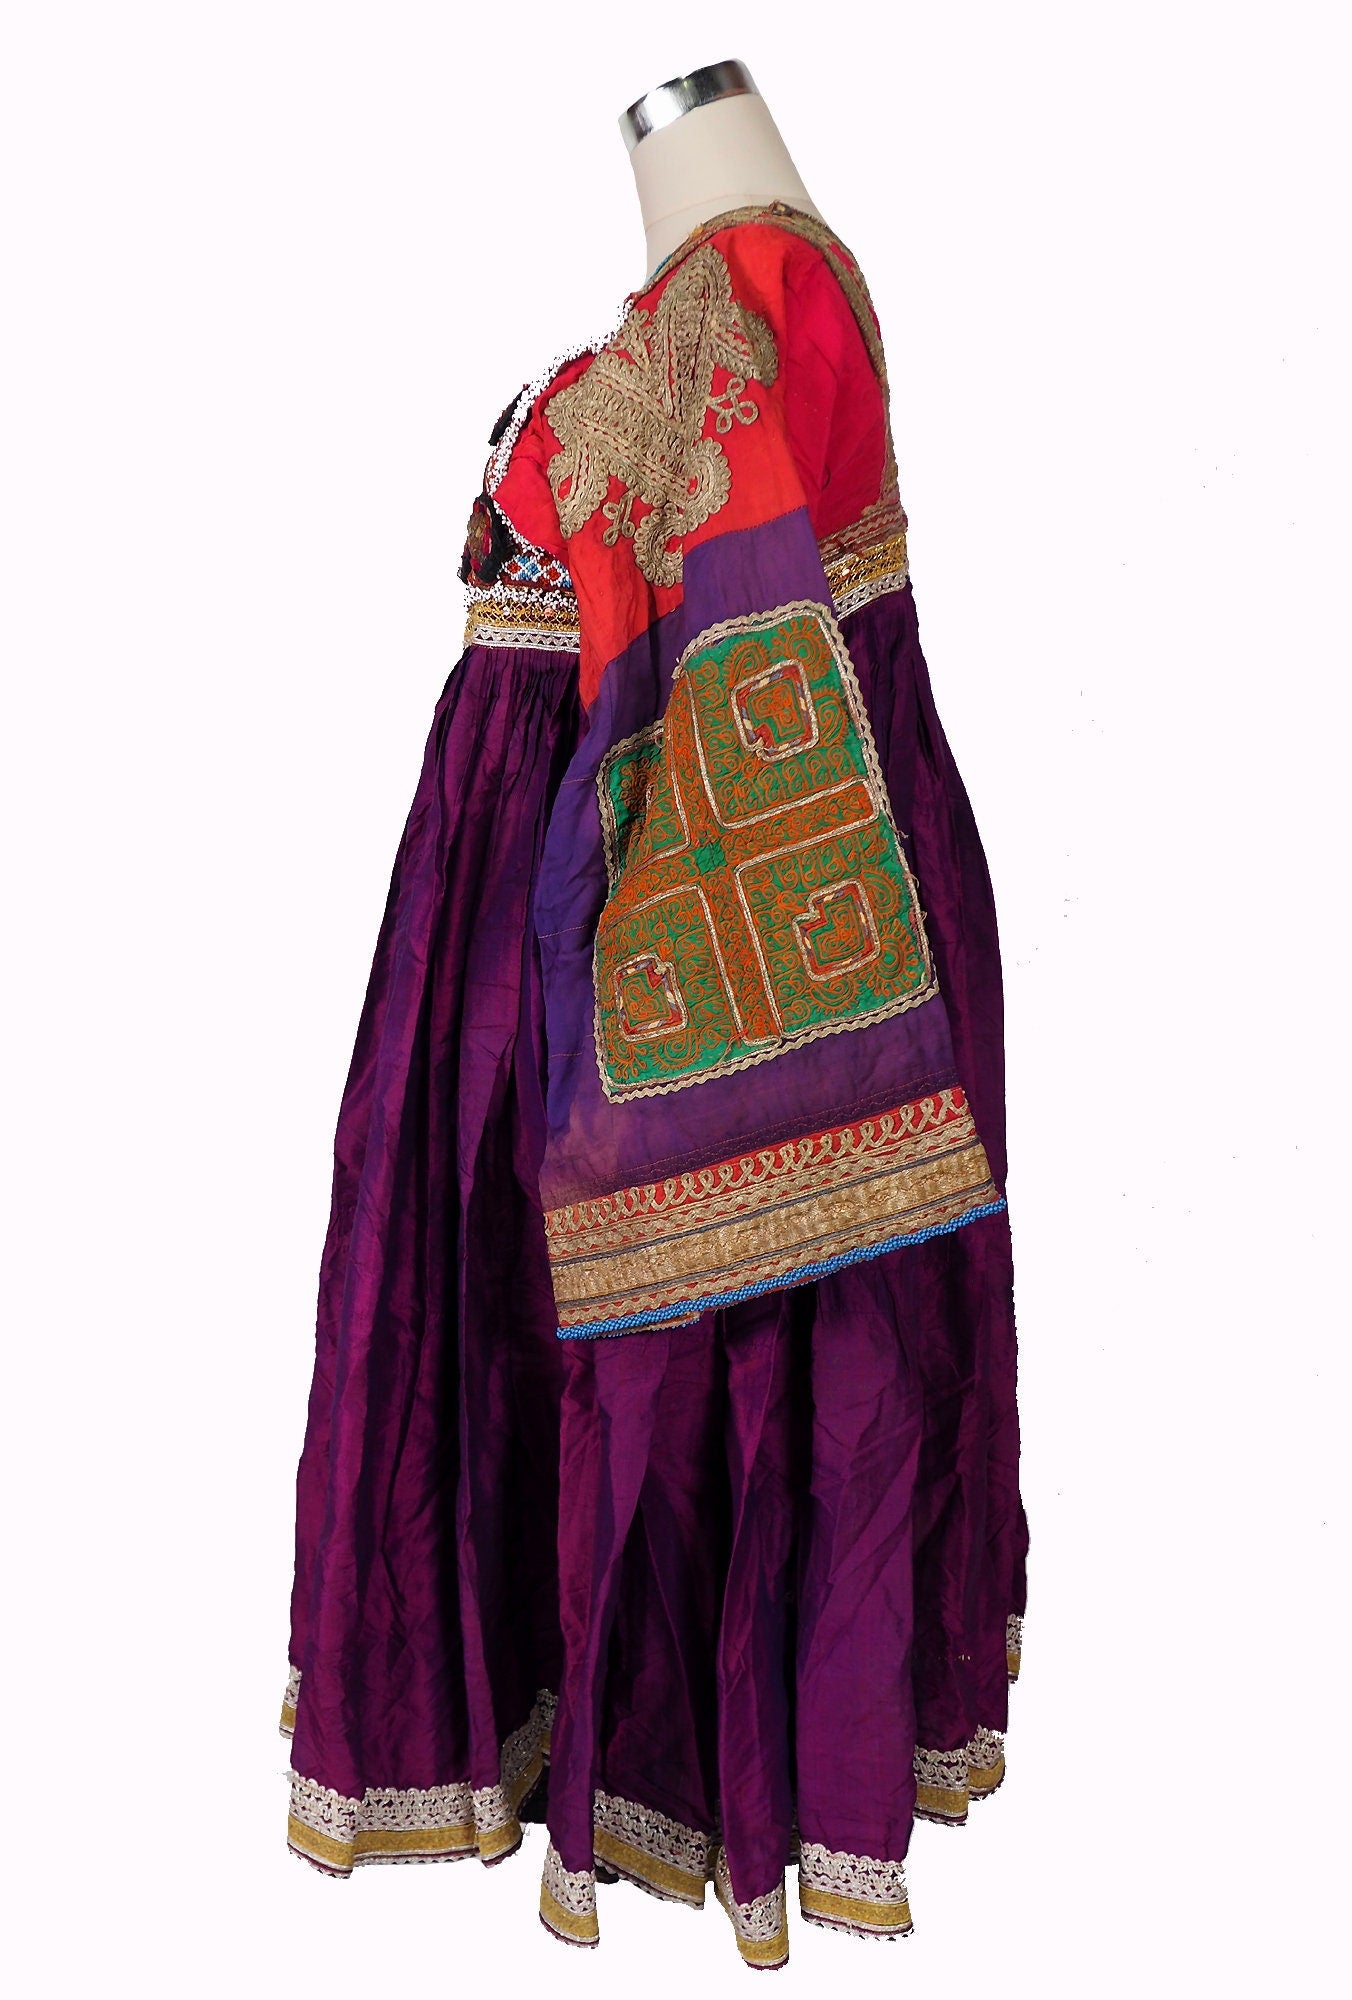 antik Orient Nomaden kuchi frauen Hochzeit Tracht afghan seiden kleid afghanistan hand bestickte kostüm Nr-21/9  Orientsbazar   